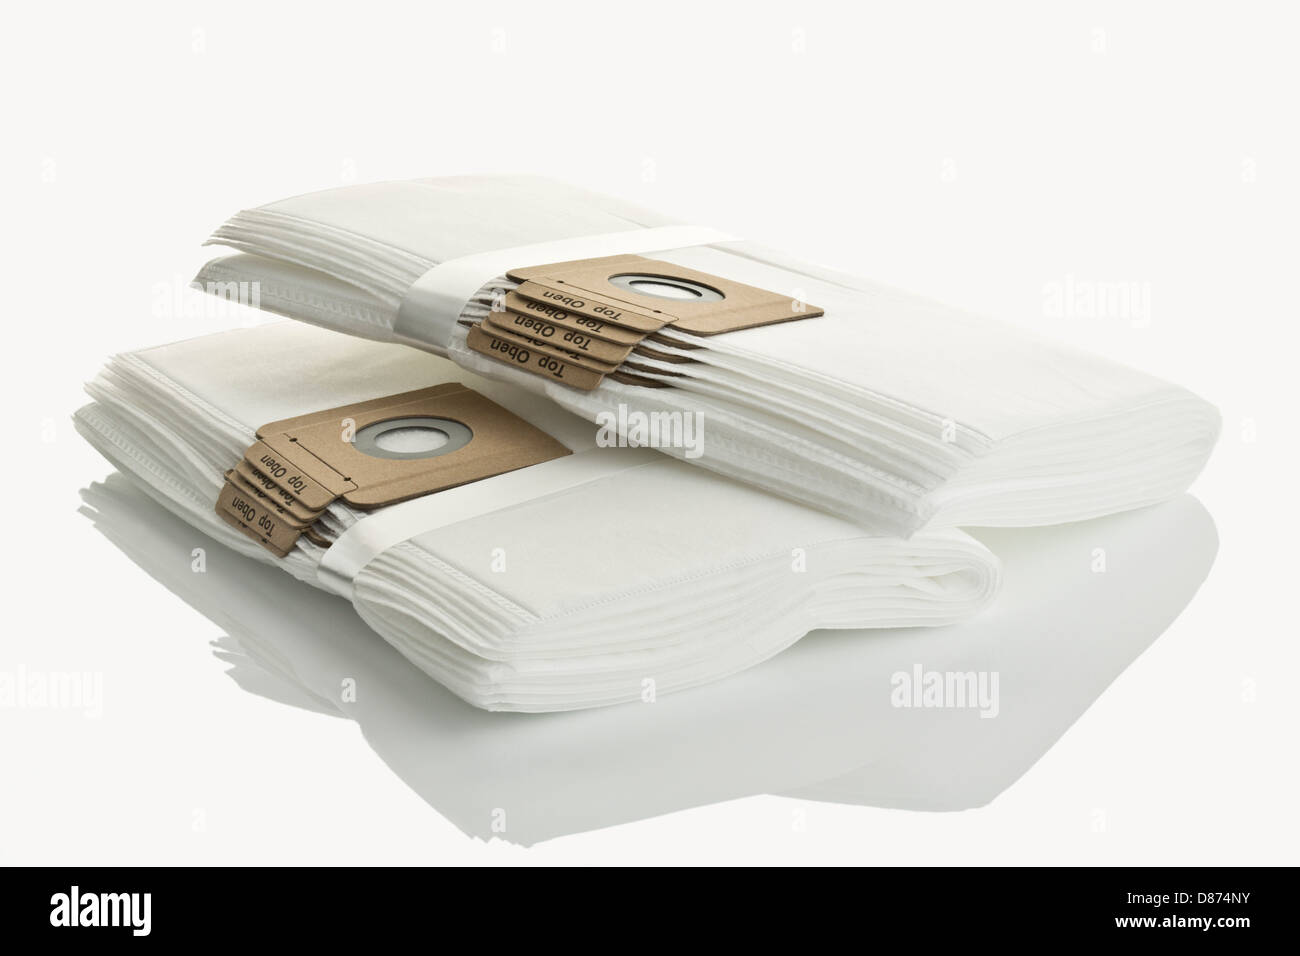 Il filtro antipolvere di sacchetti per aspirapolvere su sfondo bianco, close up Foto Stock